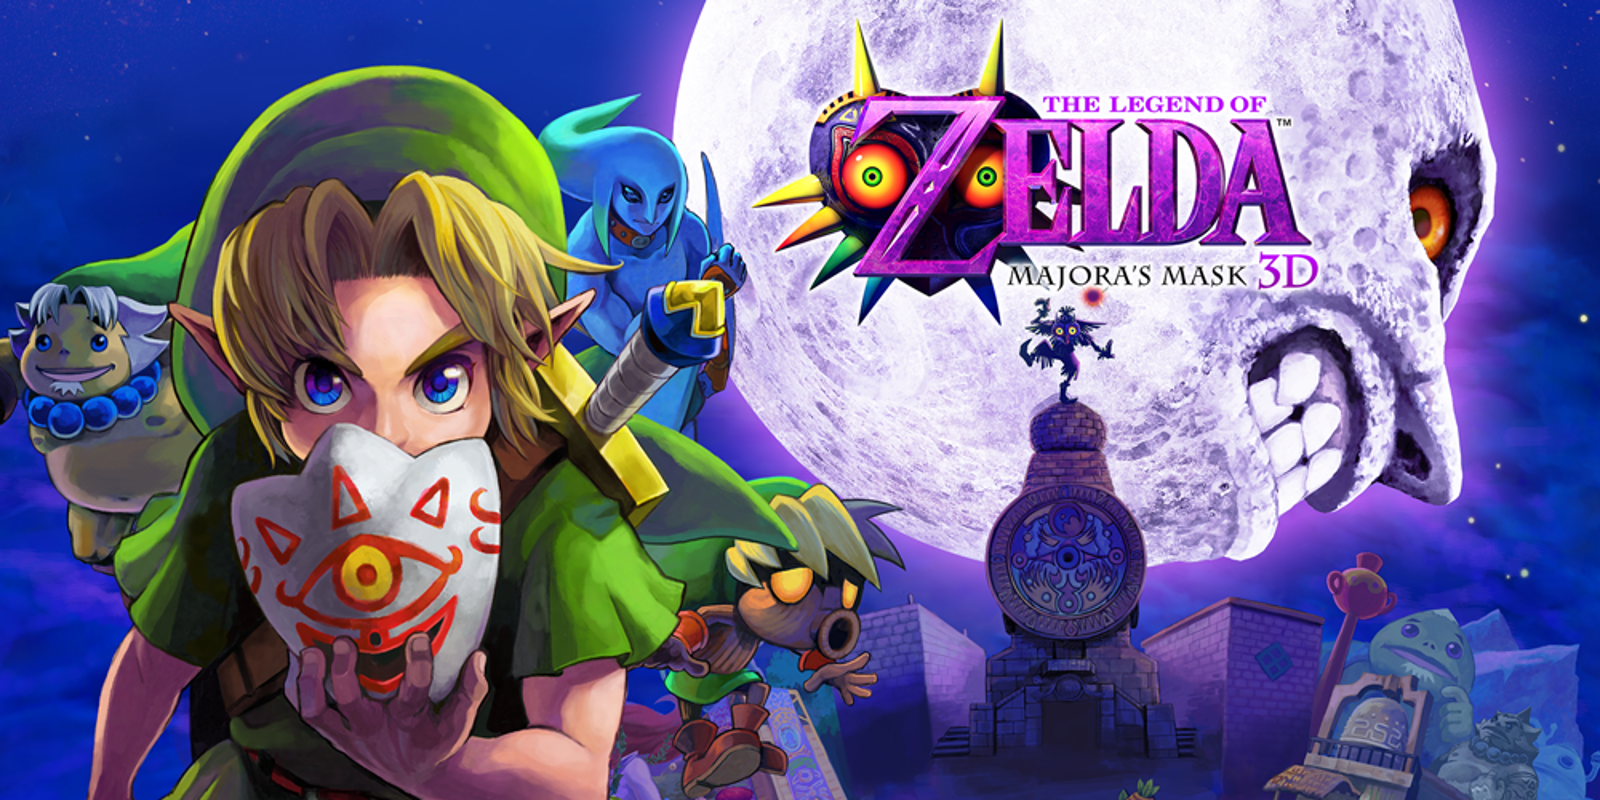 Πως να παίξετε το "The Legend of Zelda: Majora's Mask" σε HD γραφικά